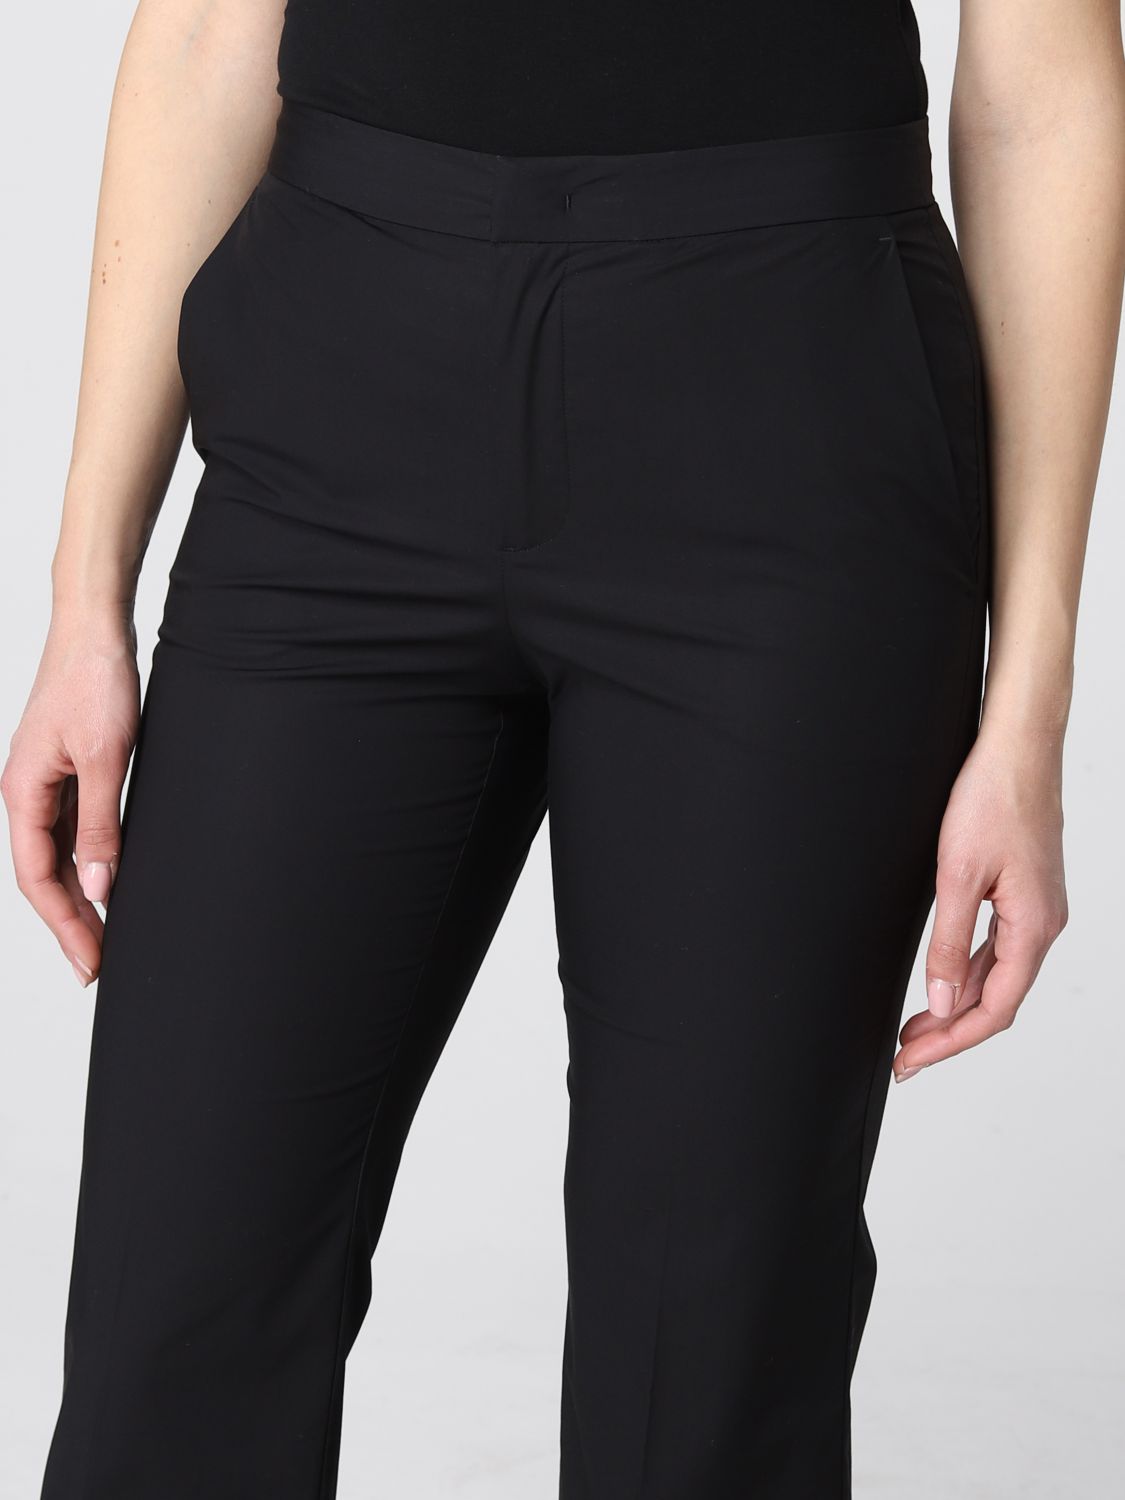 Pantalone Twinset: Pantalone cropped Twinset in cotone stretch nero 3